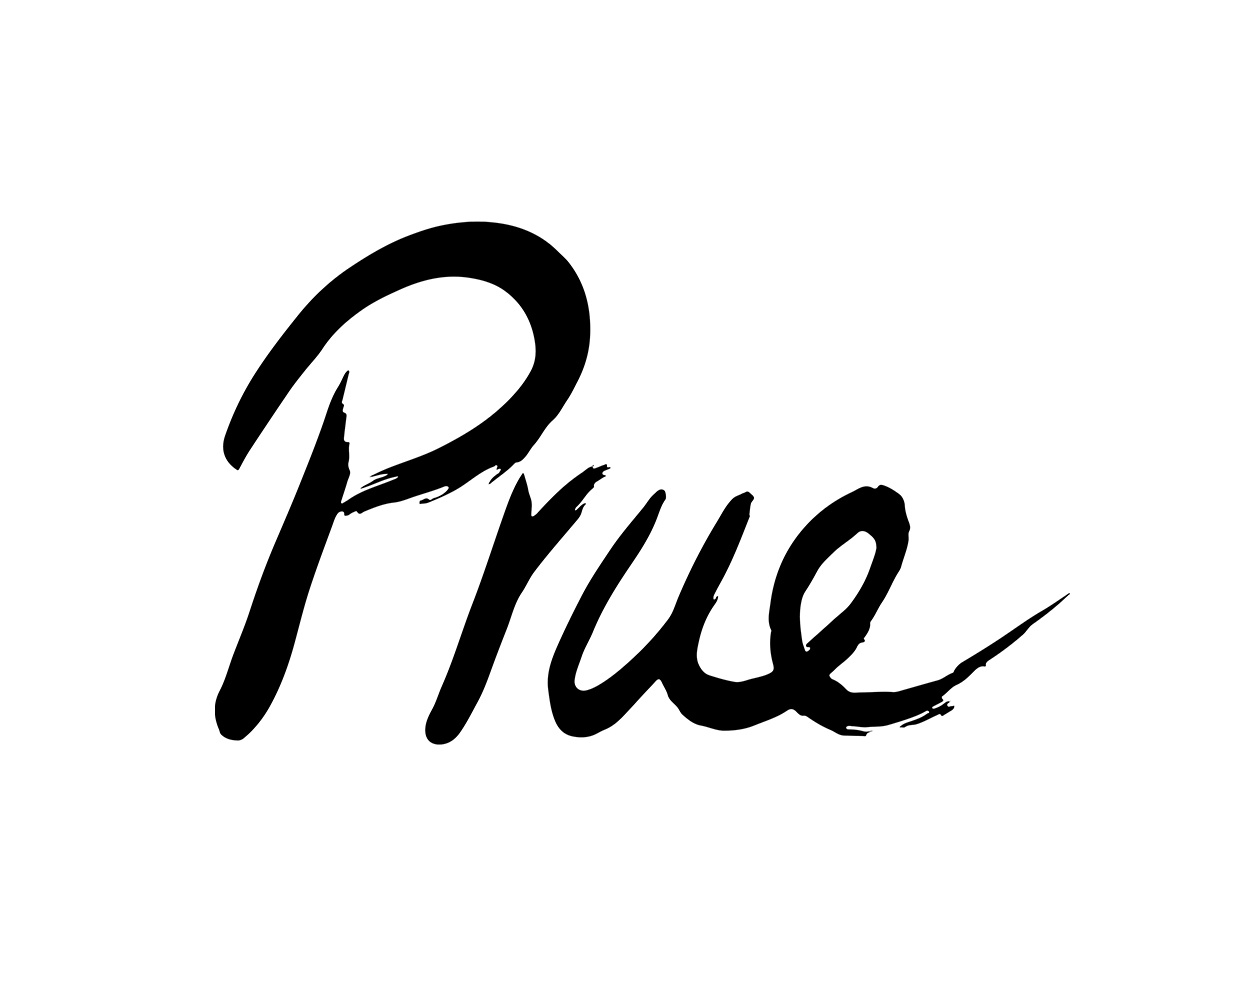 prue_signature_a.jpg